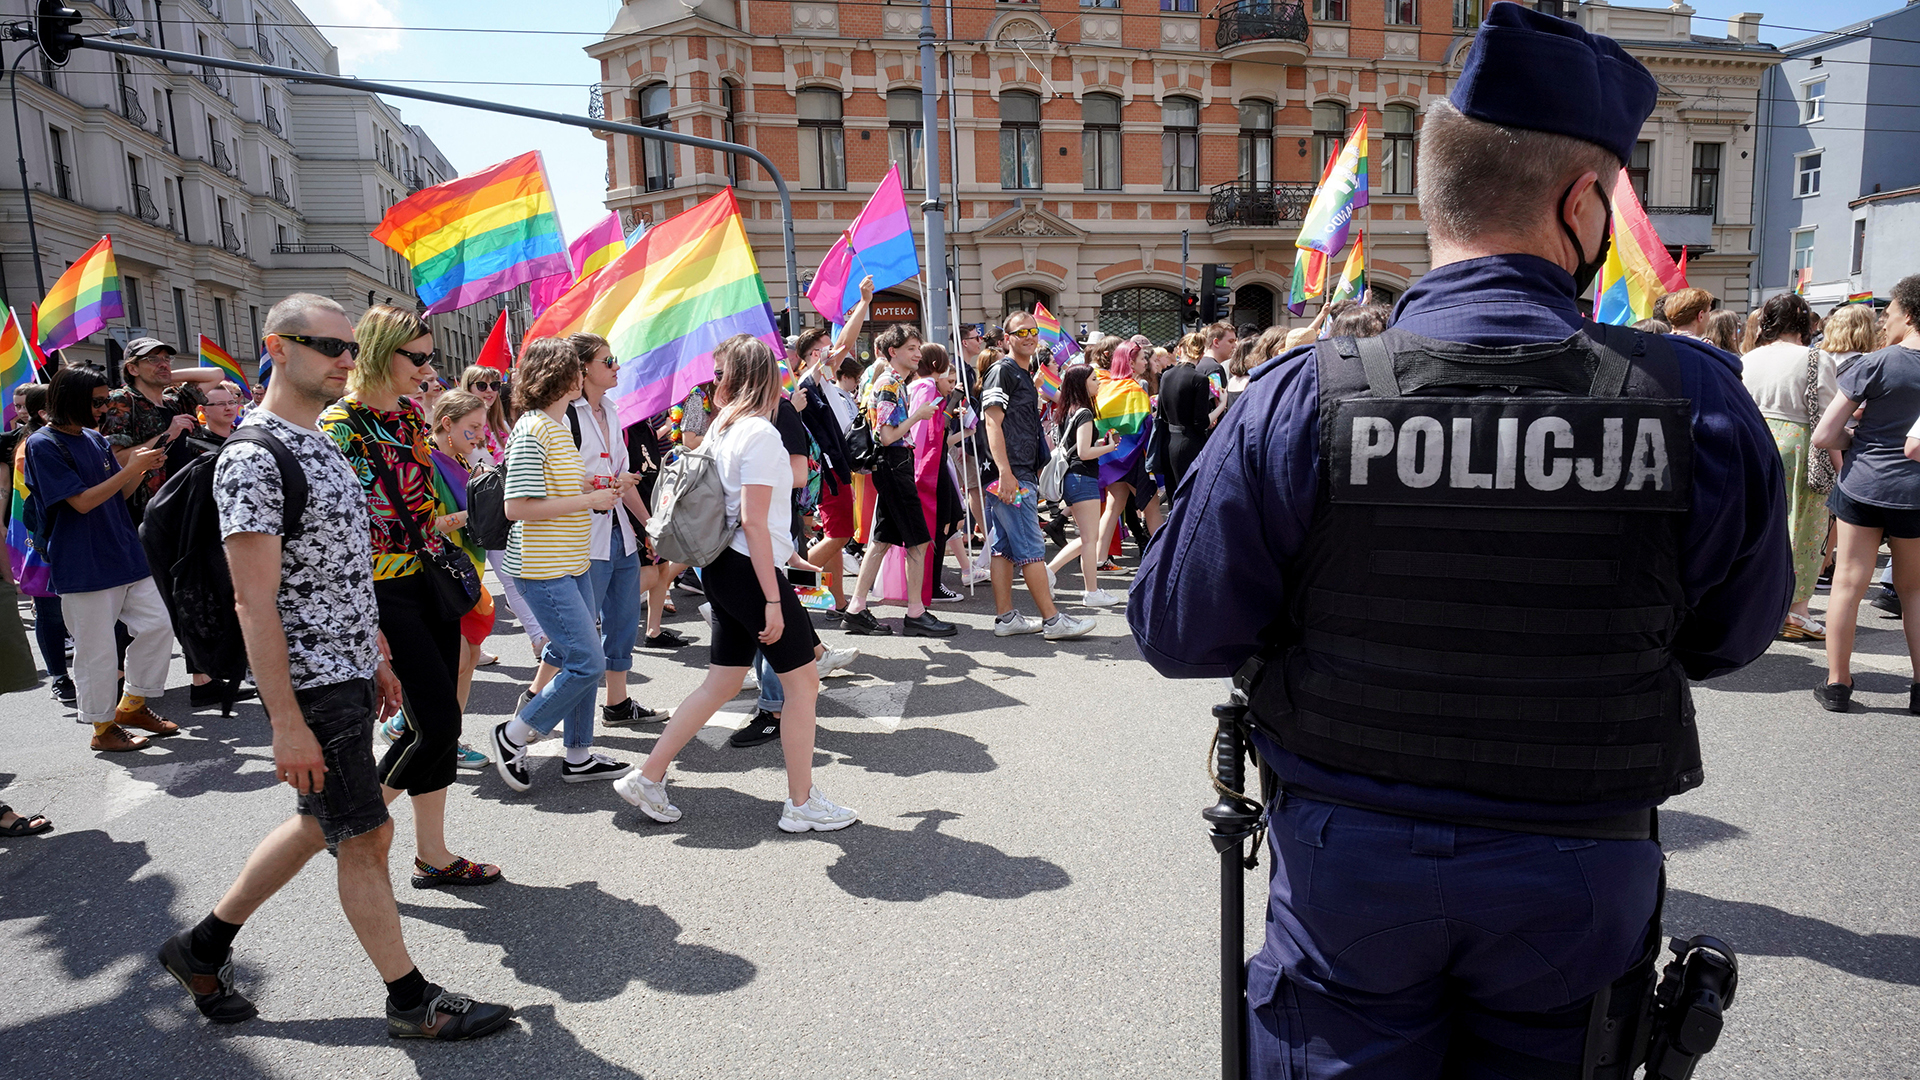 Demonstranten nehmen in Lodz (Polen) am Marsch der Gleichberechtigung zur Unterstützung der LGBT-Gemeinschaft teil.  | Agencja Gazeta via REUTERS